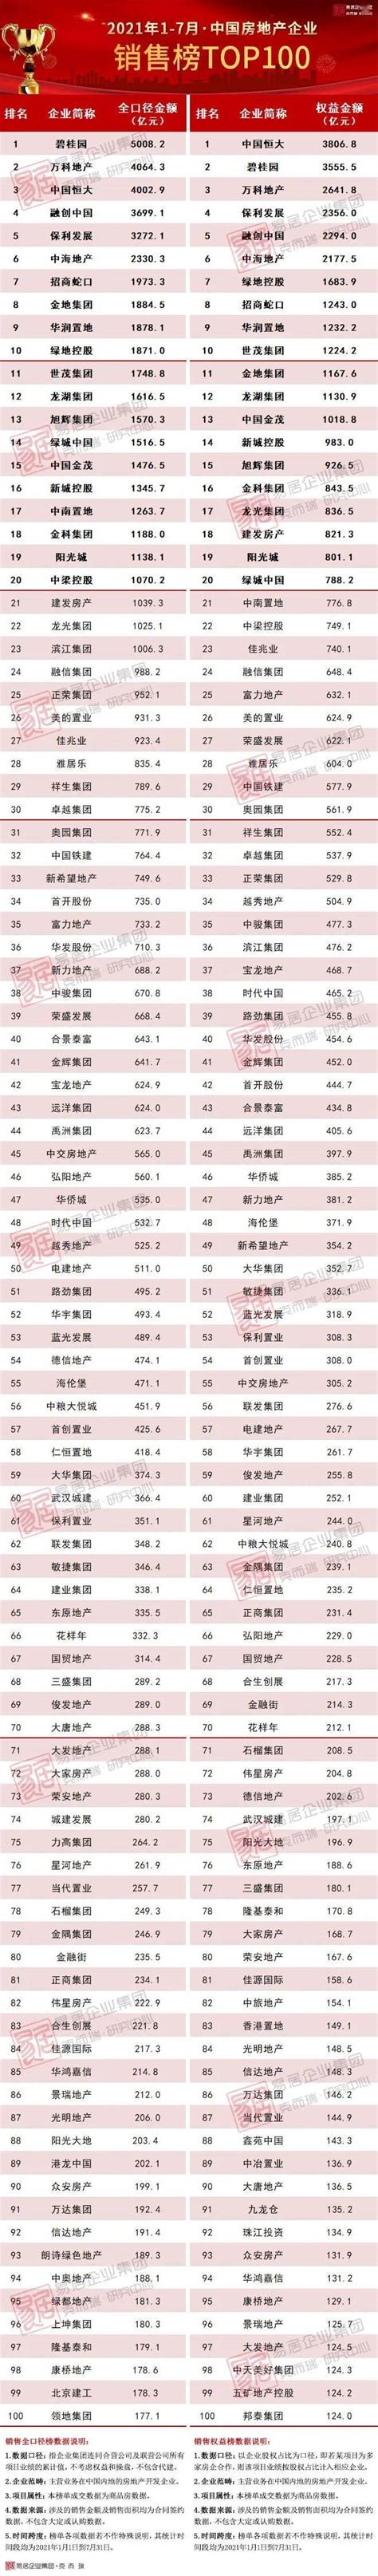 ]2022年1-8月中国房地产企业销售TOP100排行榜_房企_市场_成交